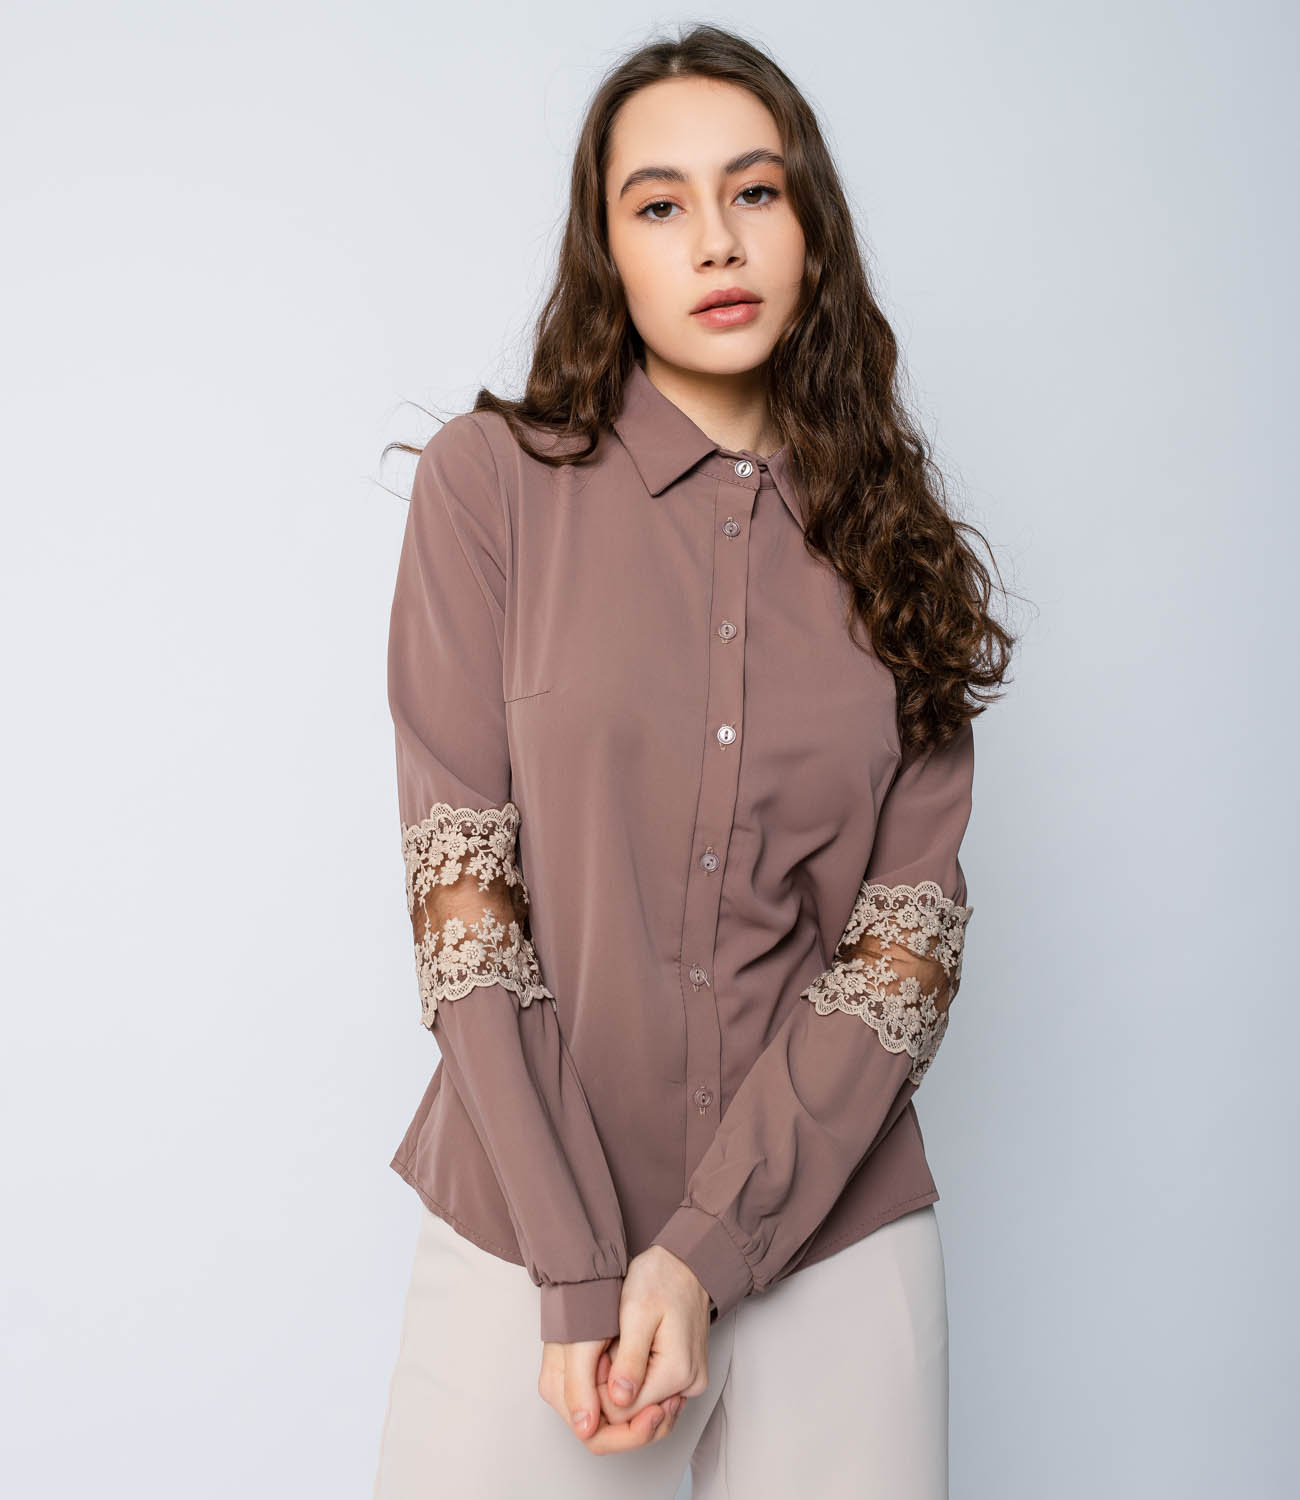 Блузка #813, коричневый